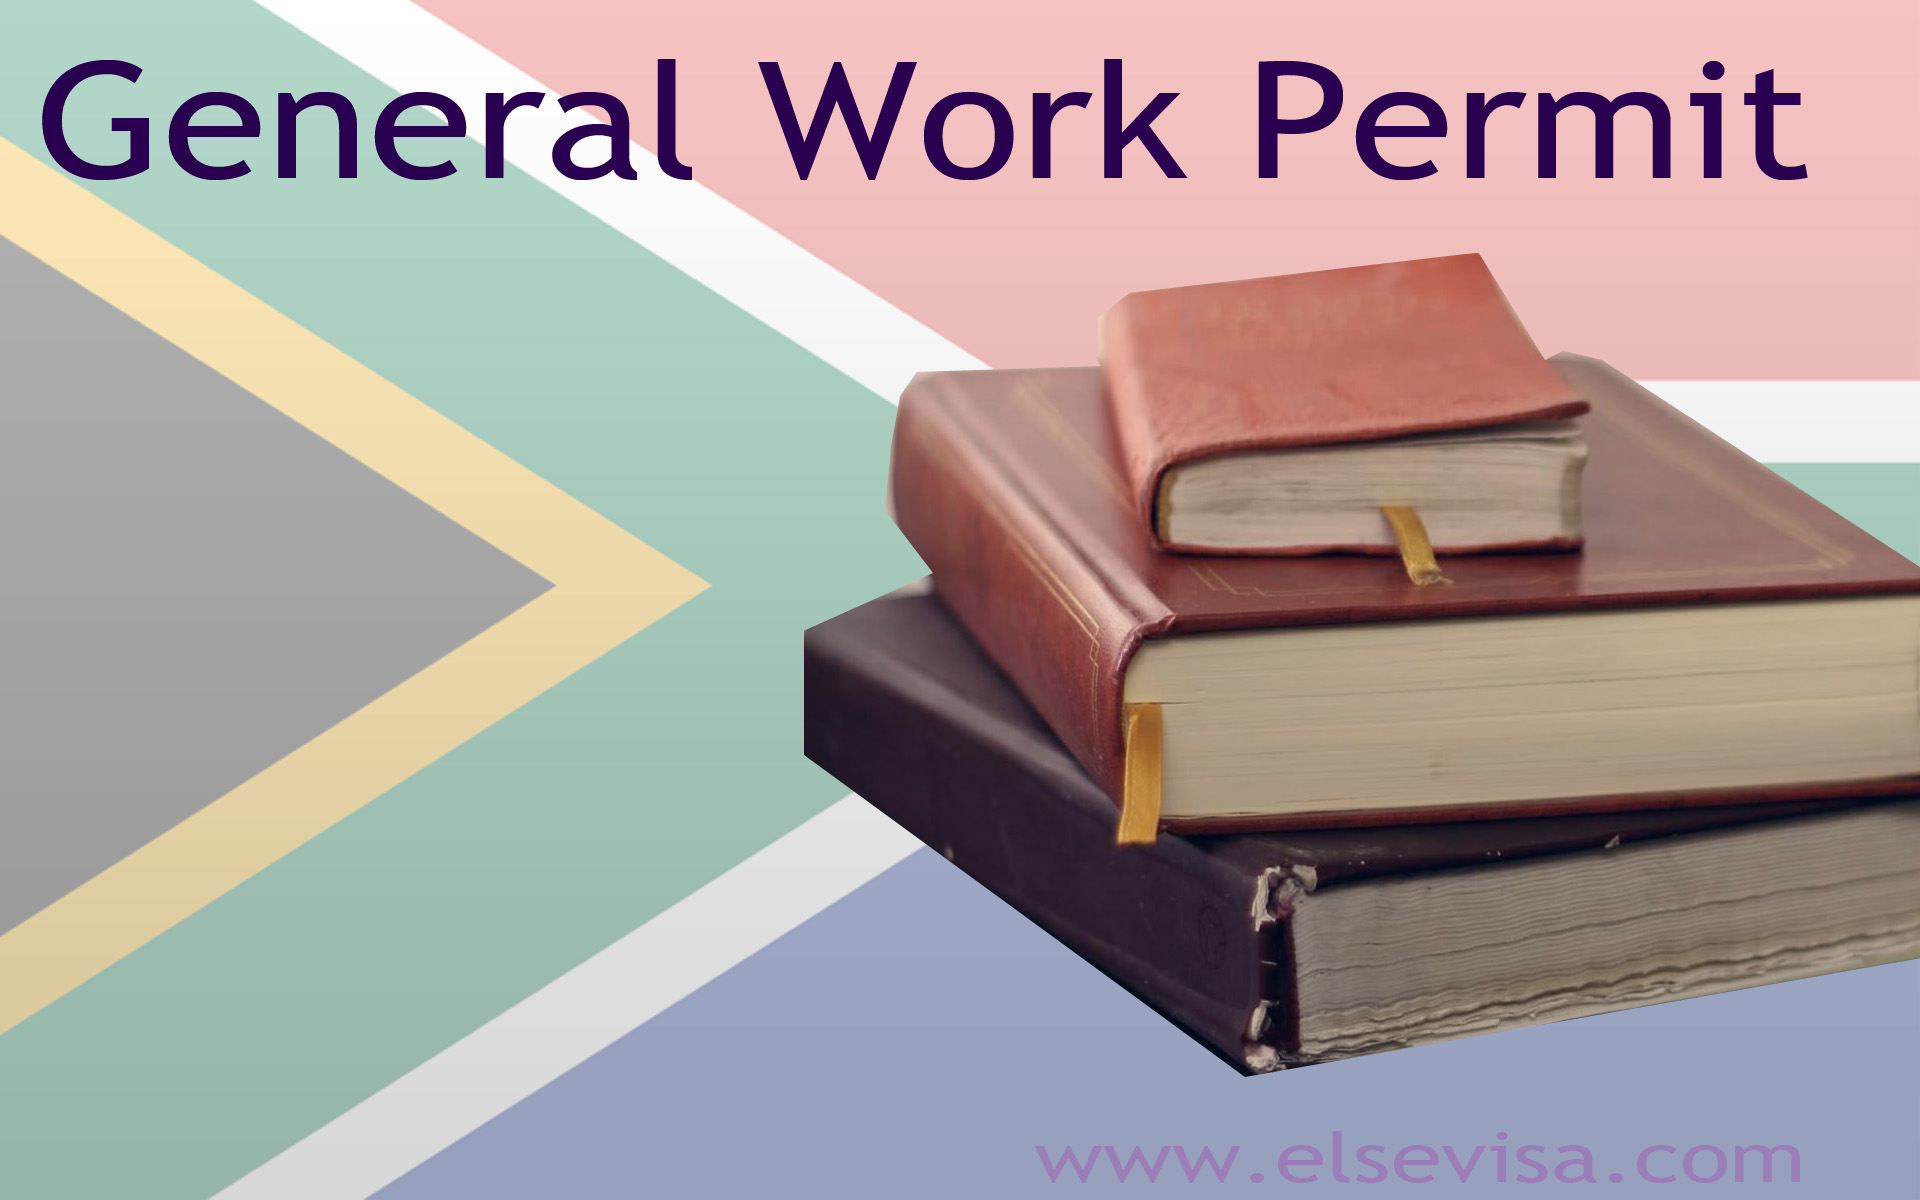 General Work Permit